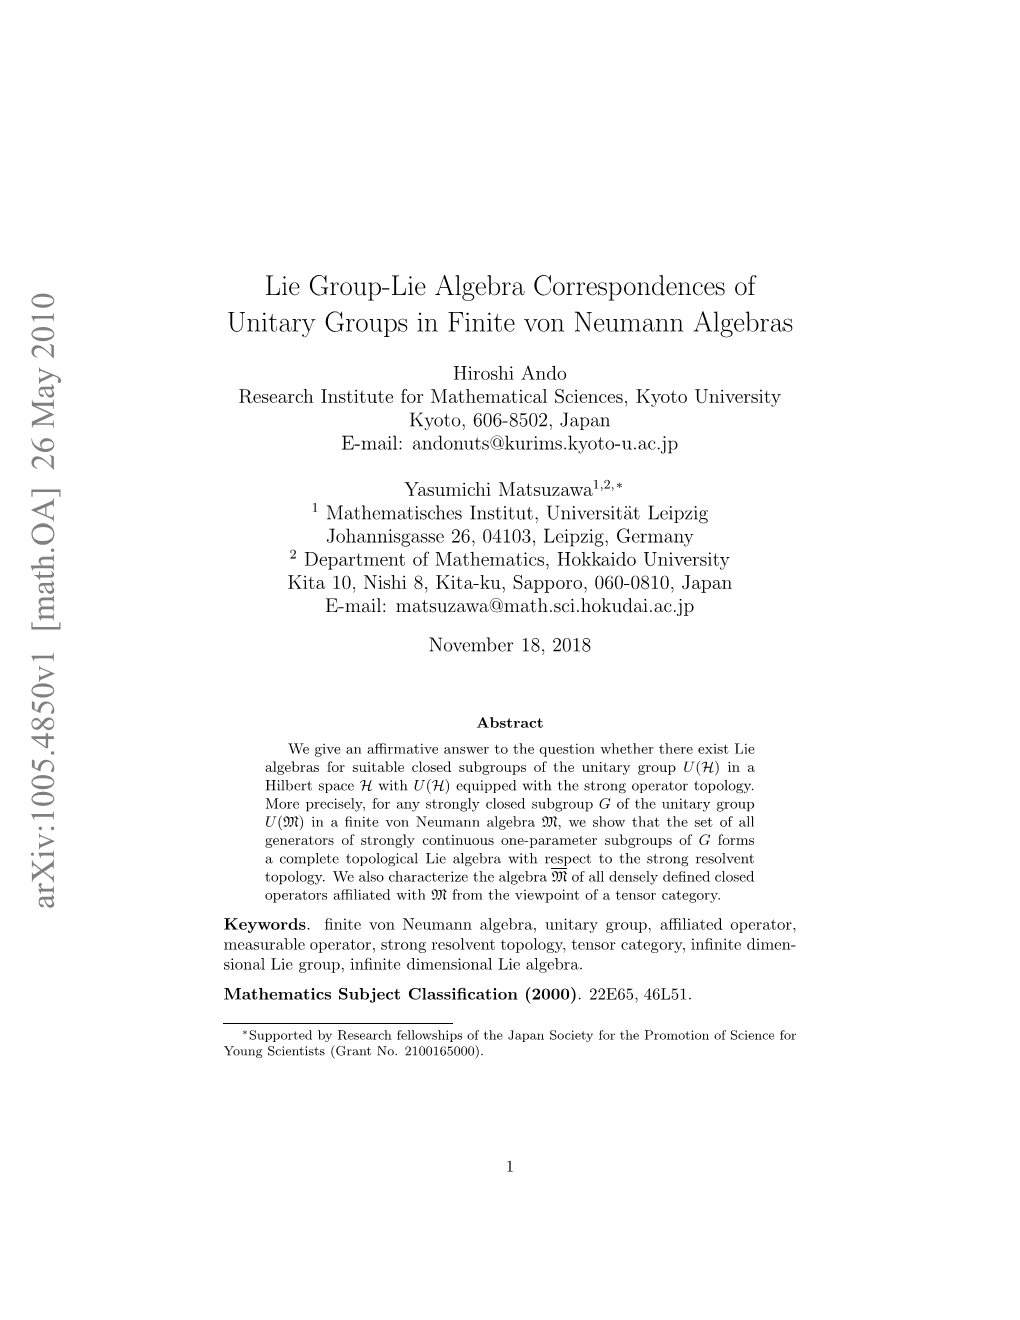 Lie Group-Lie Algebra Correspondences of Unitary